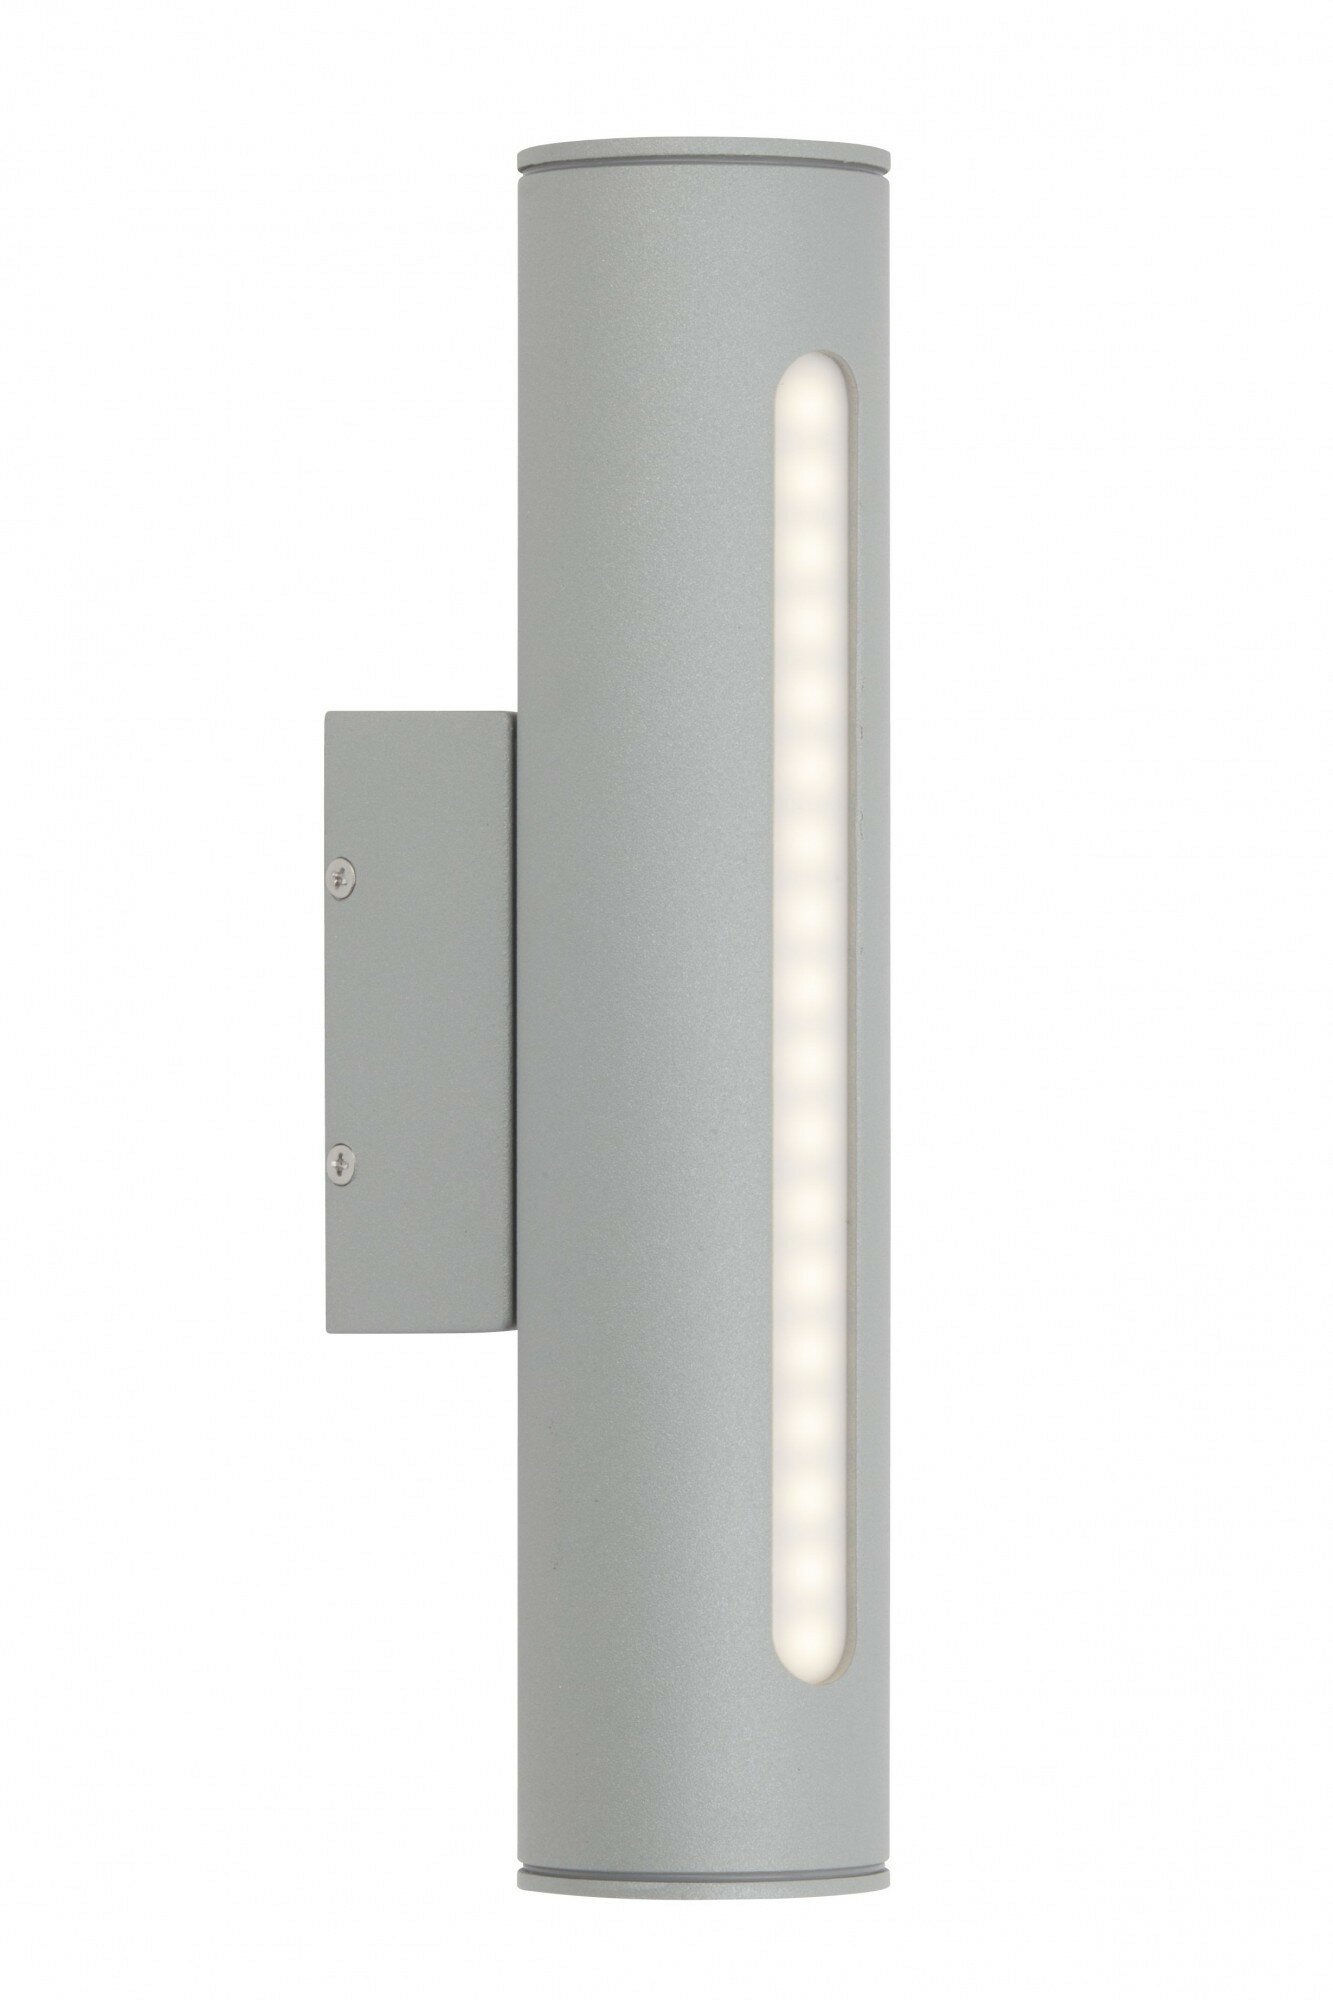 Светильник аллюминий цвет серый светодиодный 3,6Вт (18LED) уличный "Twin" IP44 - G45280/22 (Brilliant) (код заказа 2255)